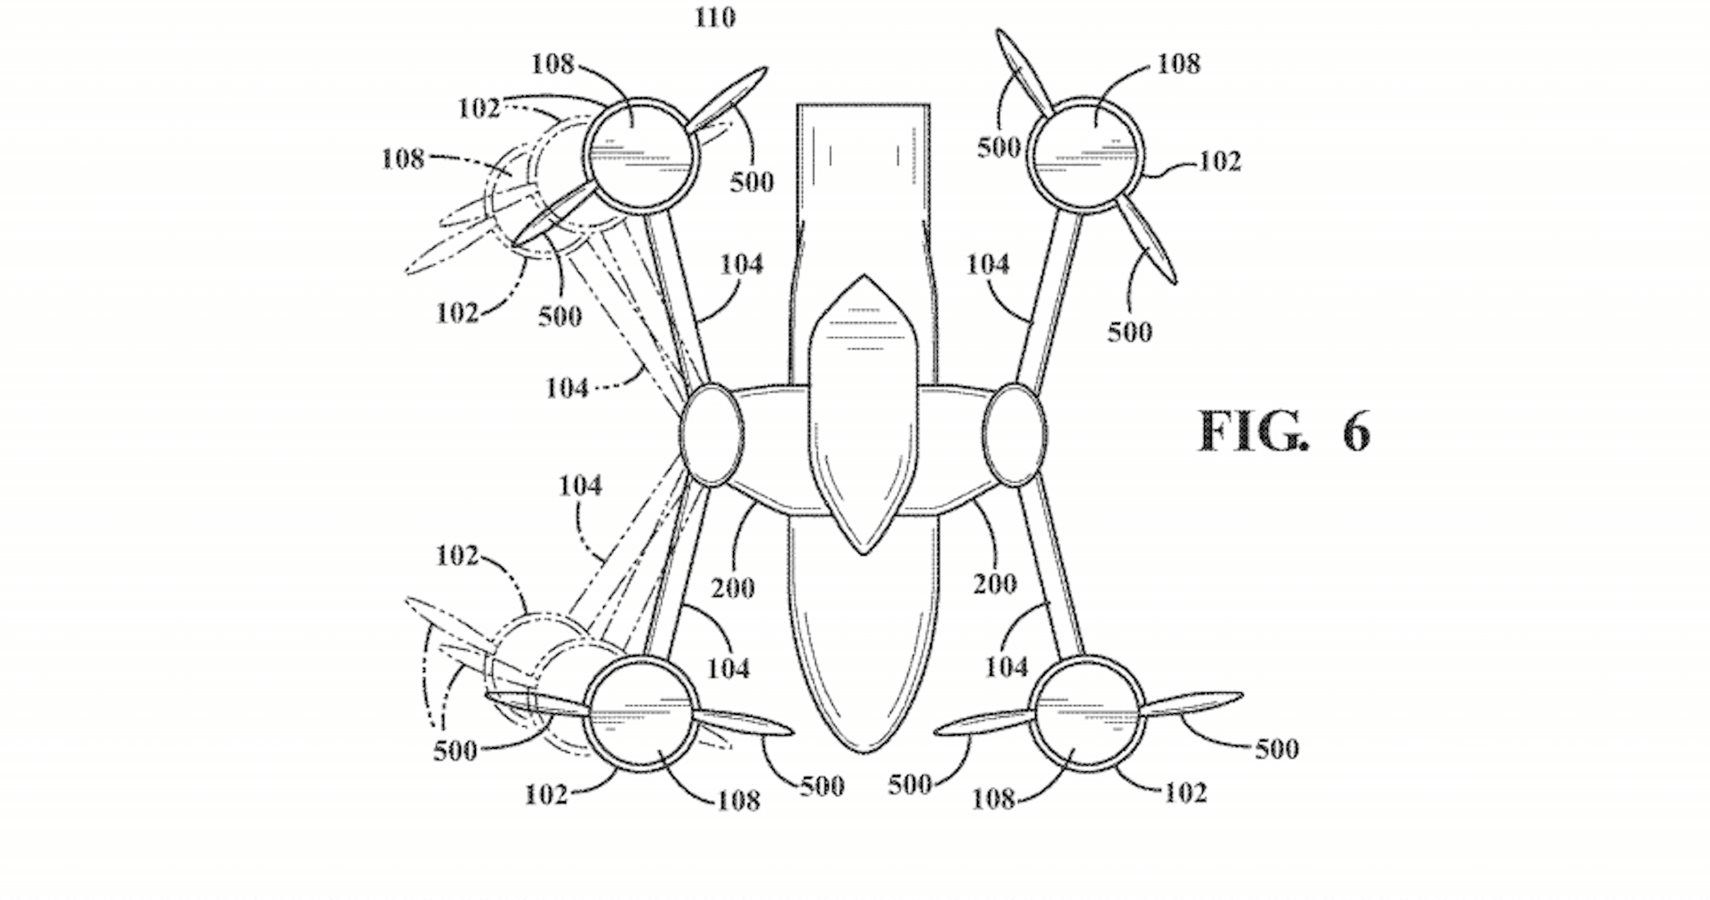 Toyota Patents Strange Car/Helicopter Mashup